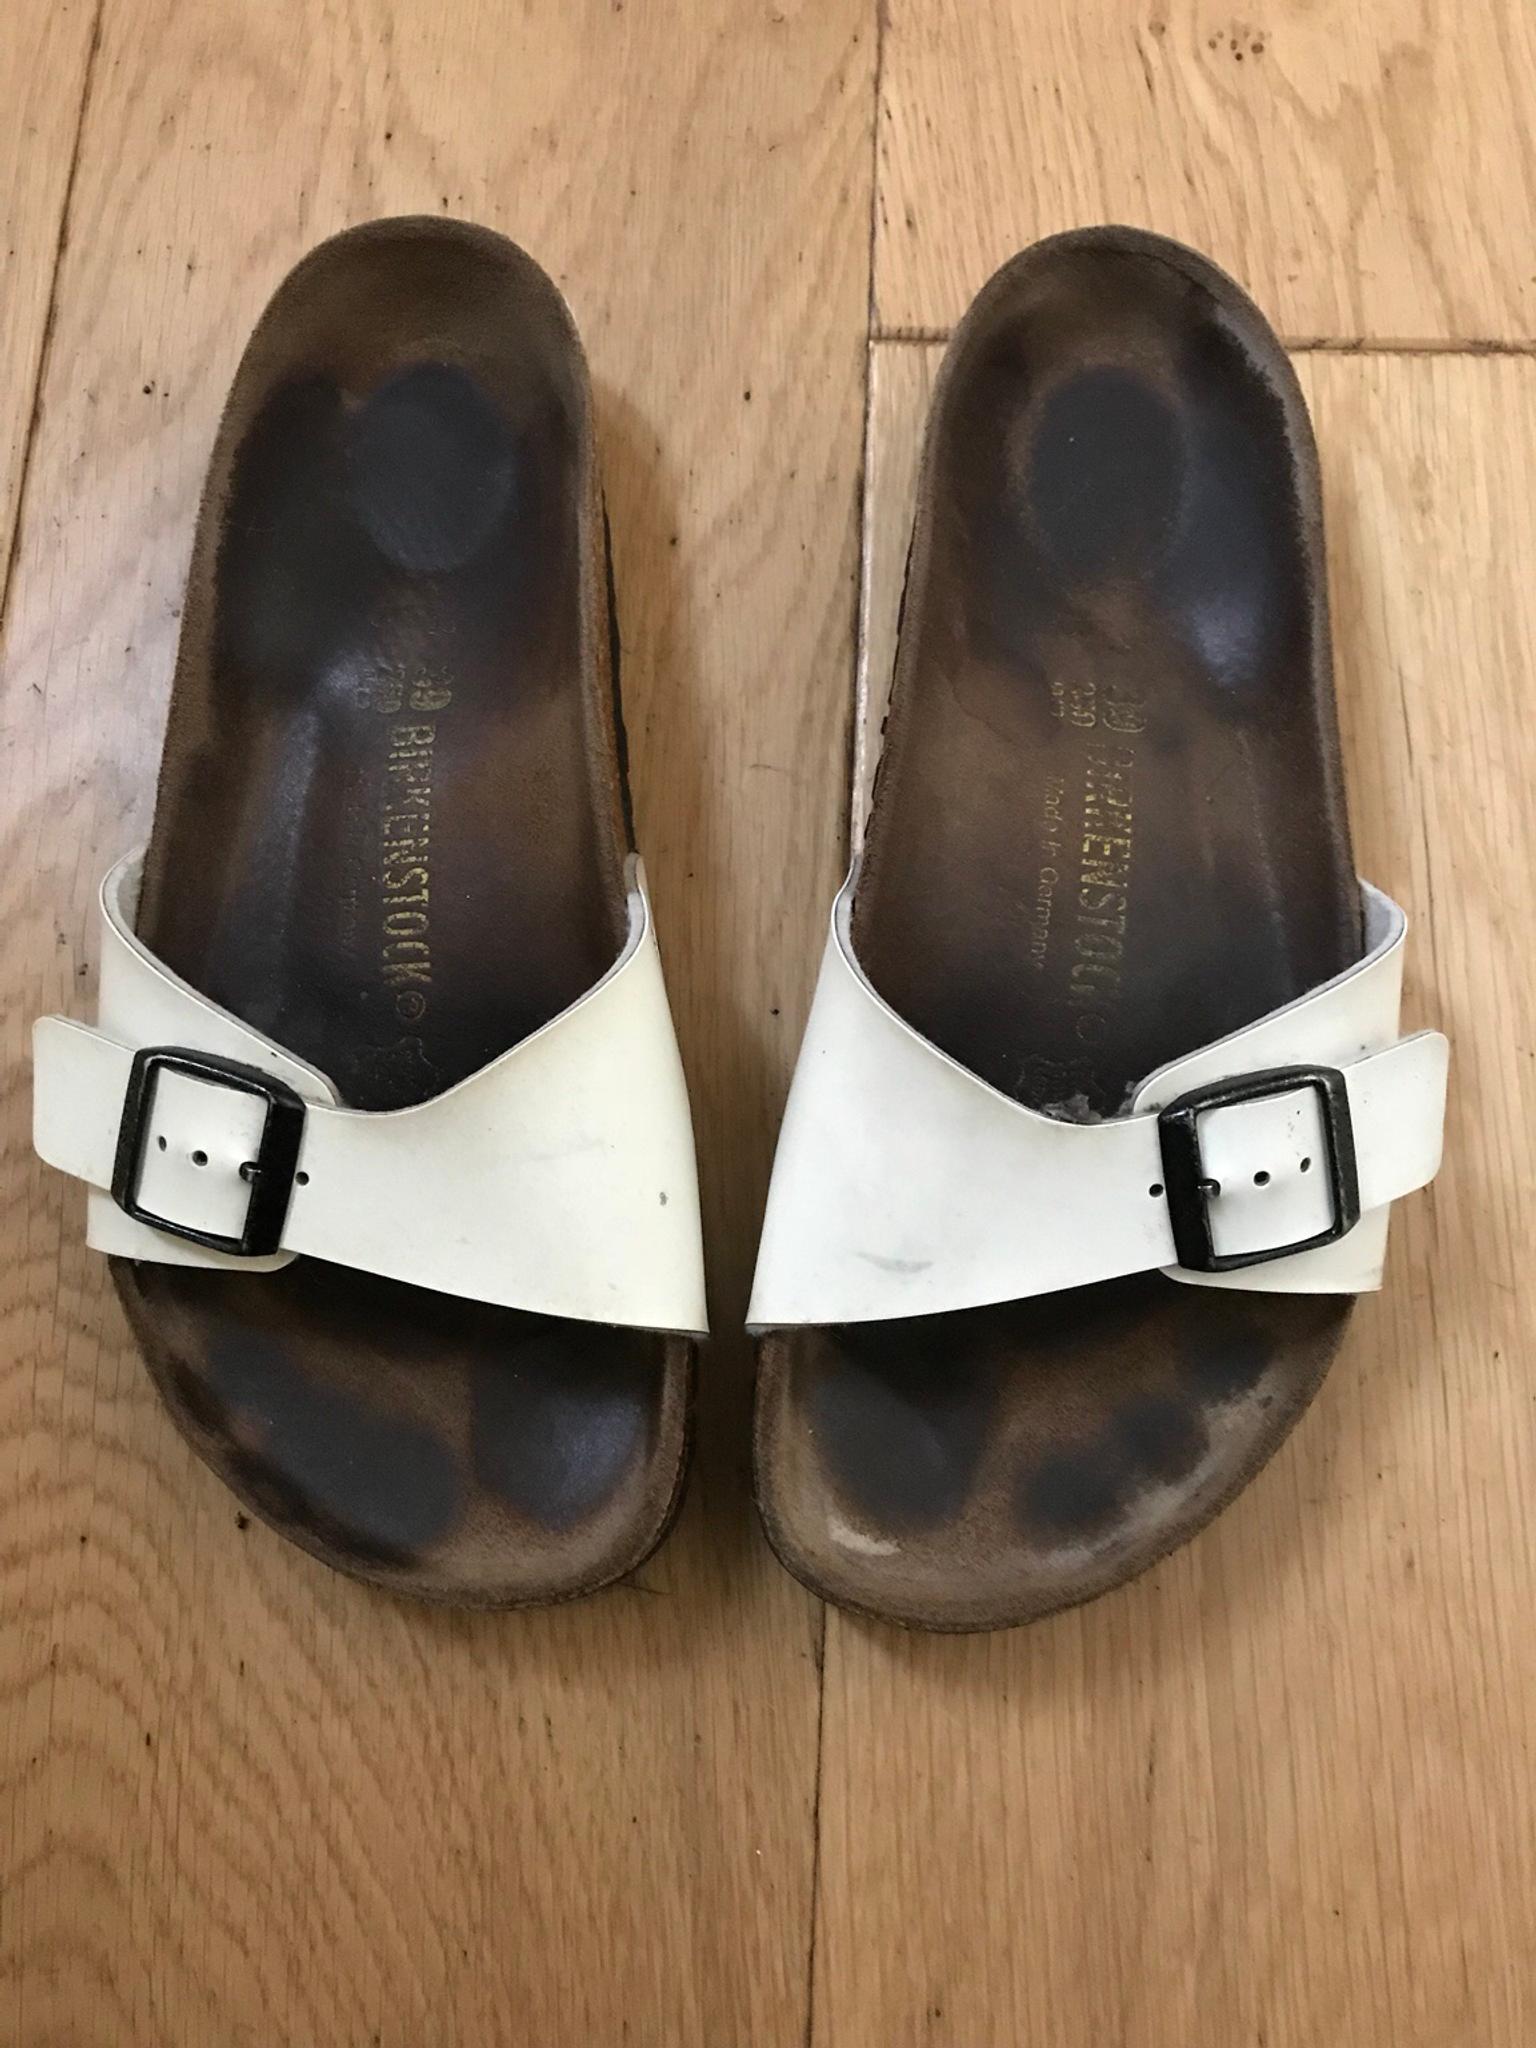 birkenstock sandals size 6